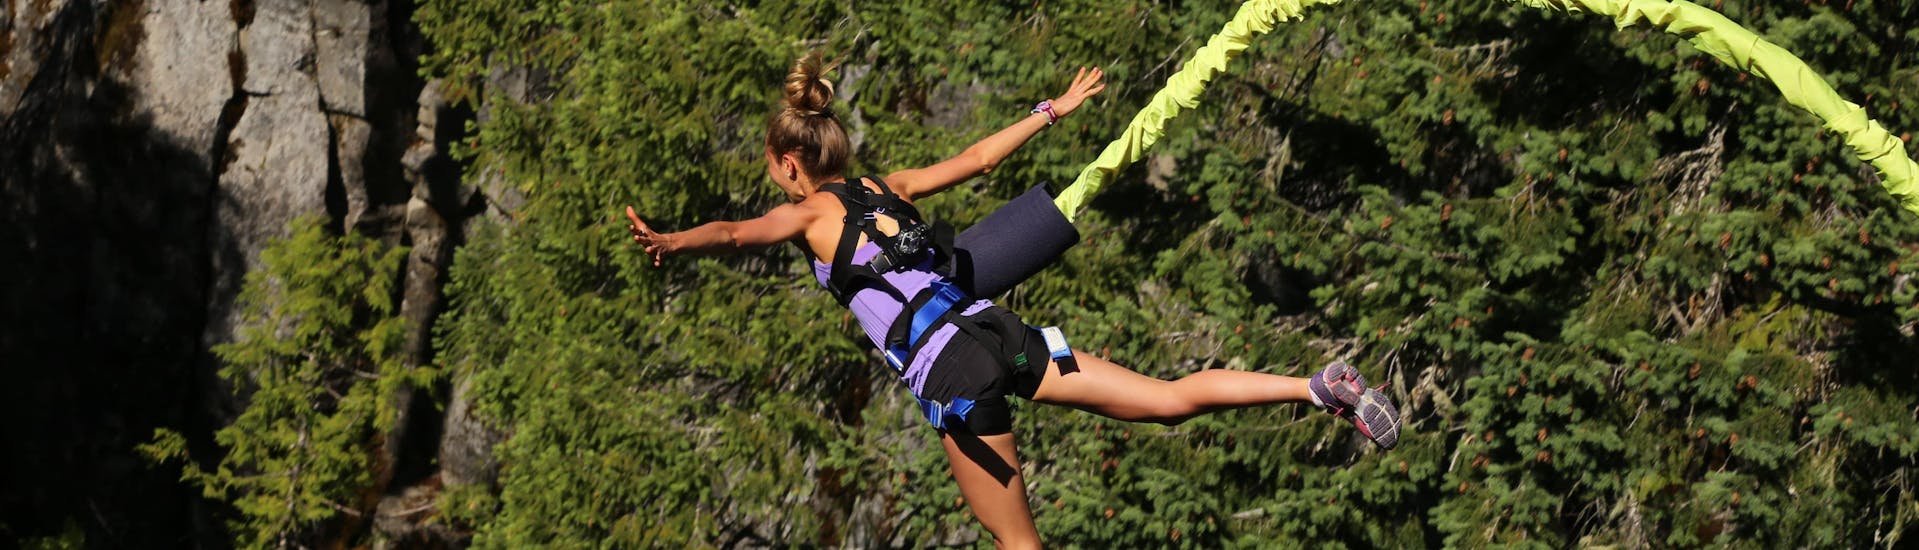 Una chica hace puenting en Orio, uno de los sitios más populares para hacer bungee jumping. 